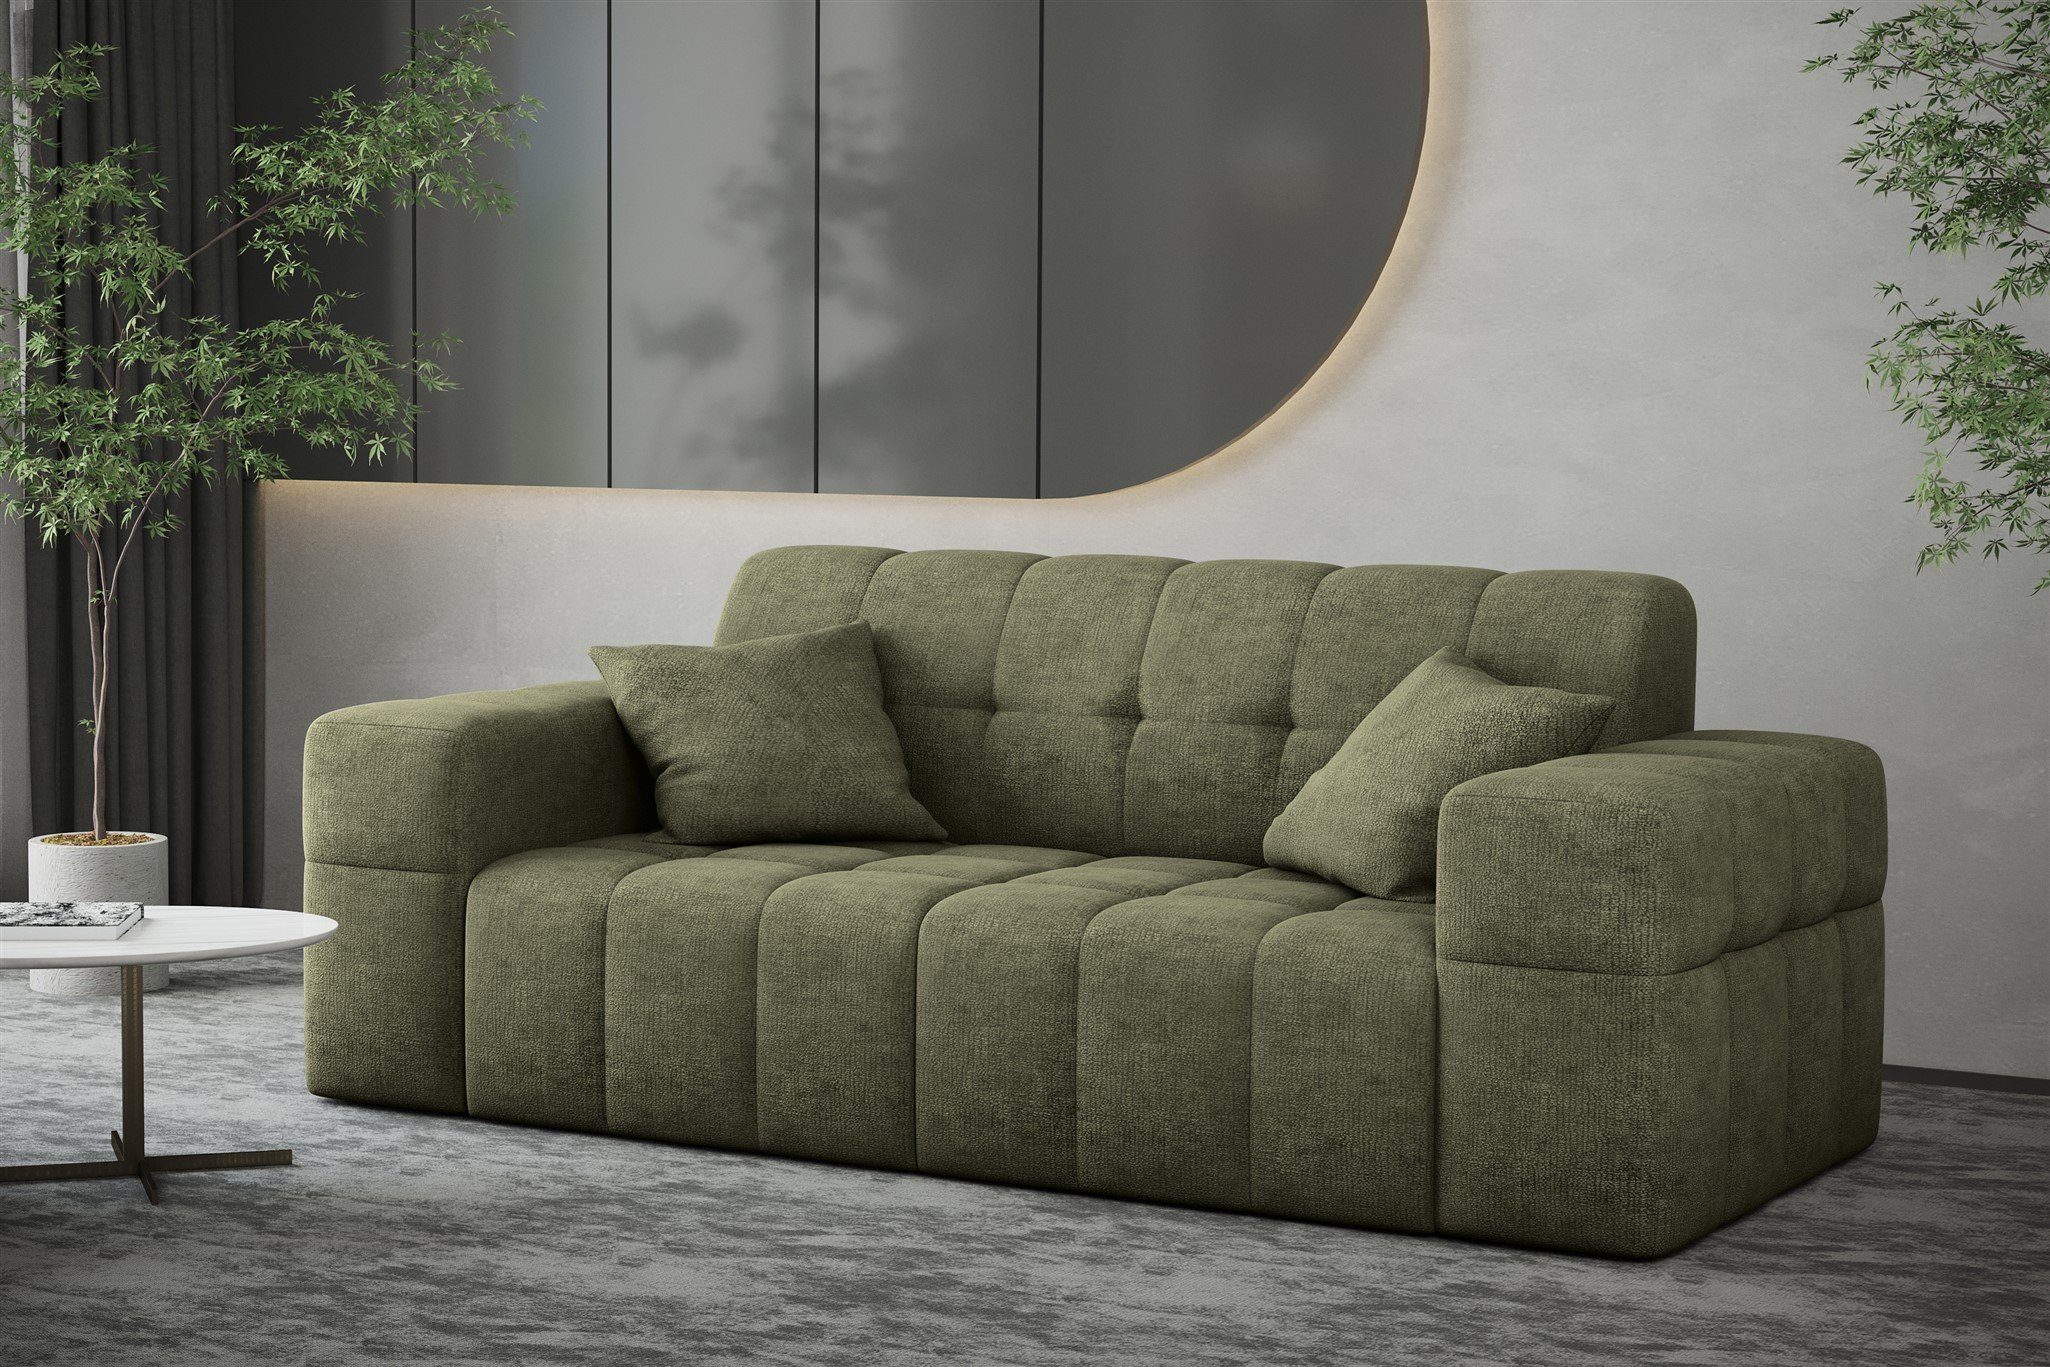 Designer-Sofa Rundumbezug 2-Sitzer Sofa Sofa NANCY Möbel in Stoff Fun Harmony, Olivgrün